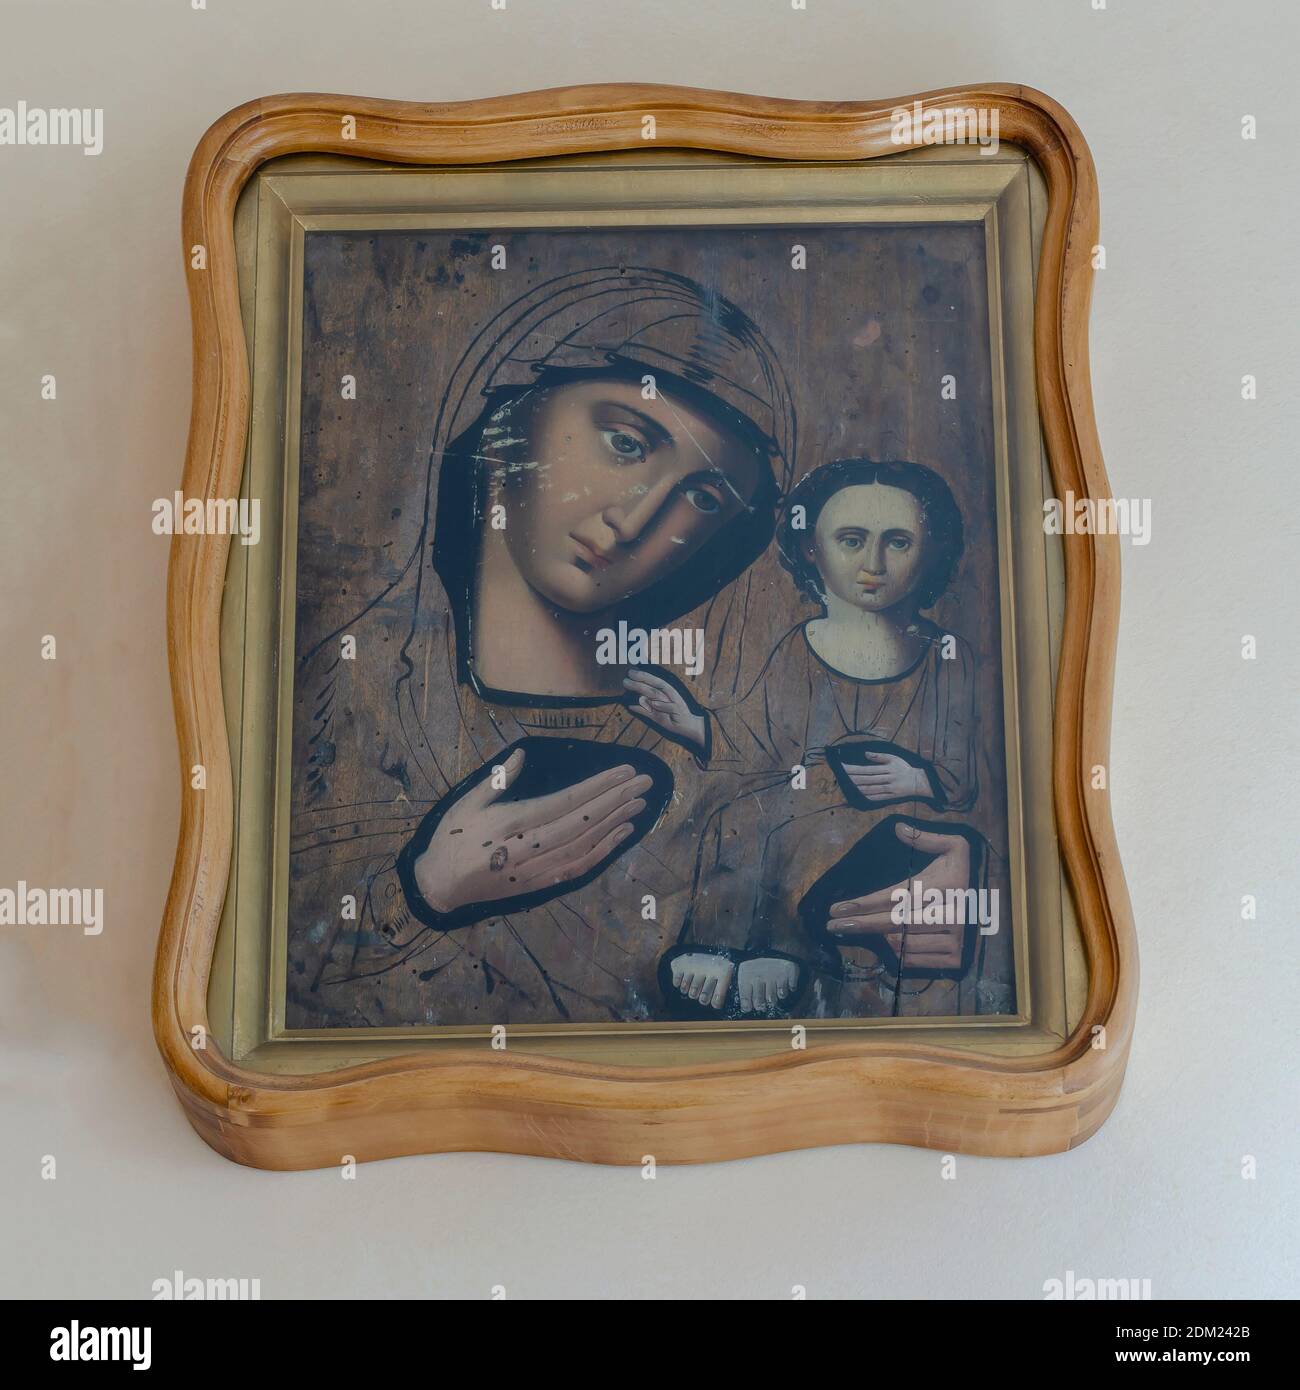 Ukraine, Nikolaev - 26 août 2020 : ancienne icône de la mère de Dieu avec le bébé Jésus dans ses bras. L'icône dans un cadre massif en chêne est suspendue sur le W Banque D'Images